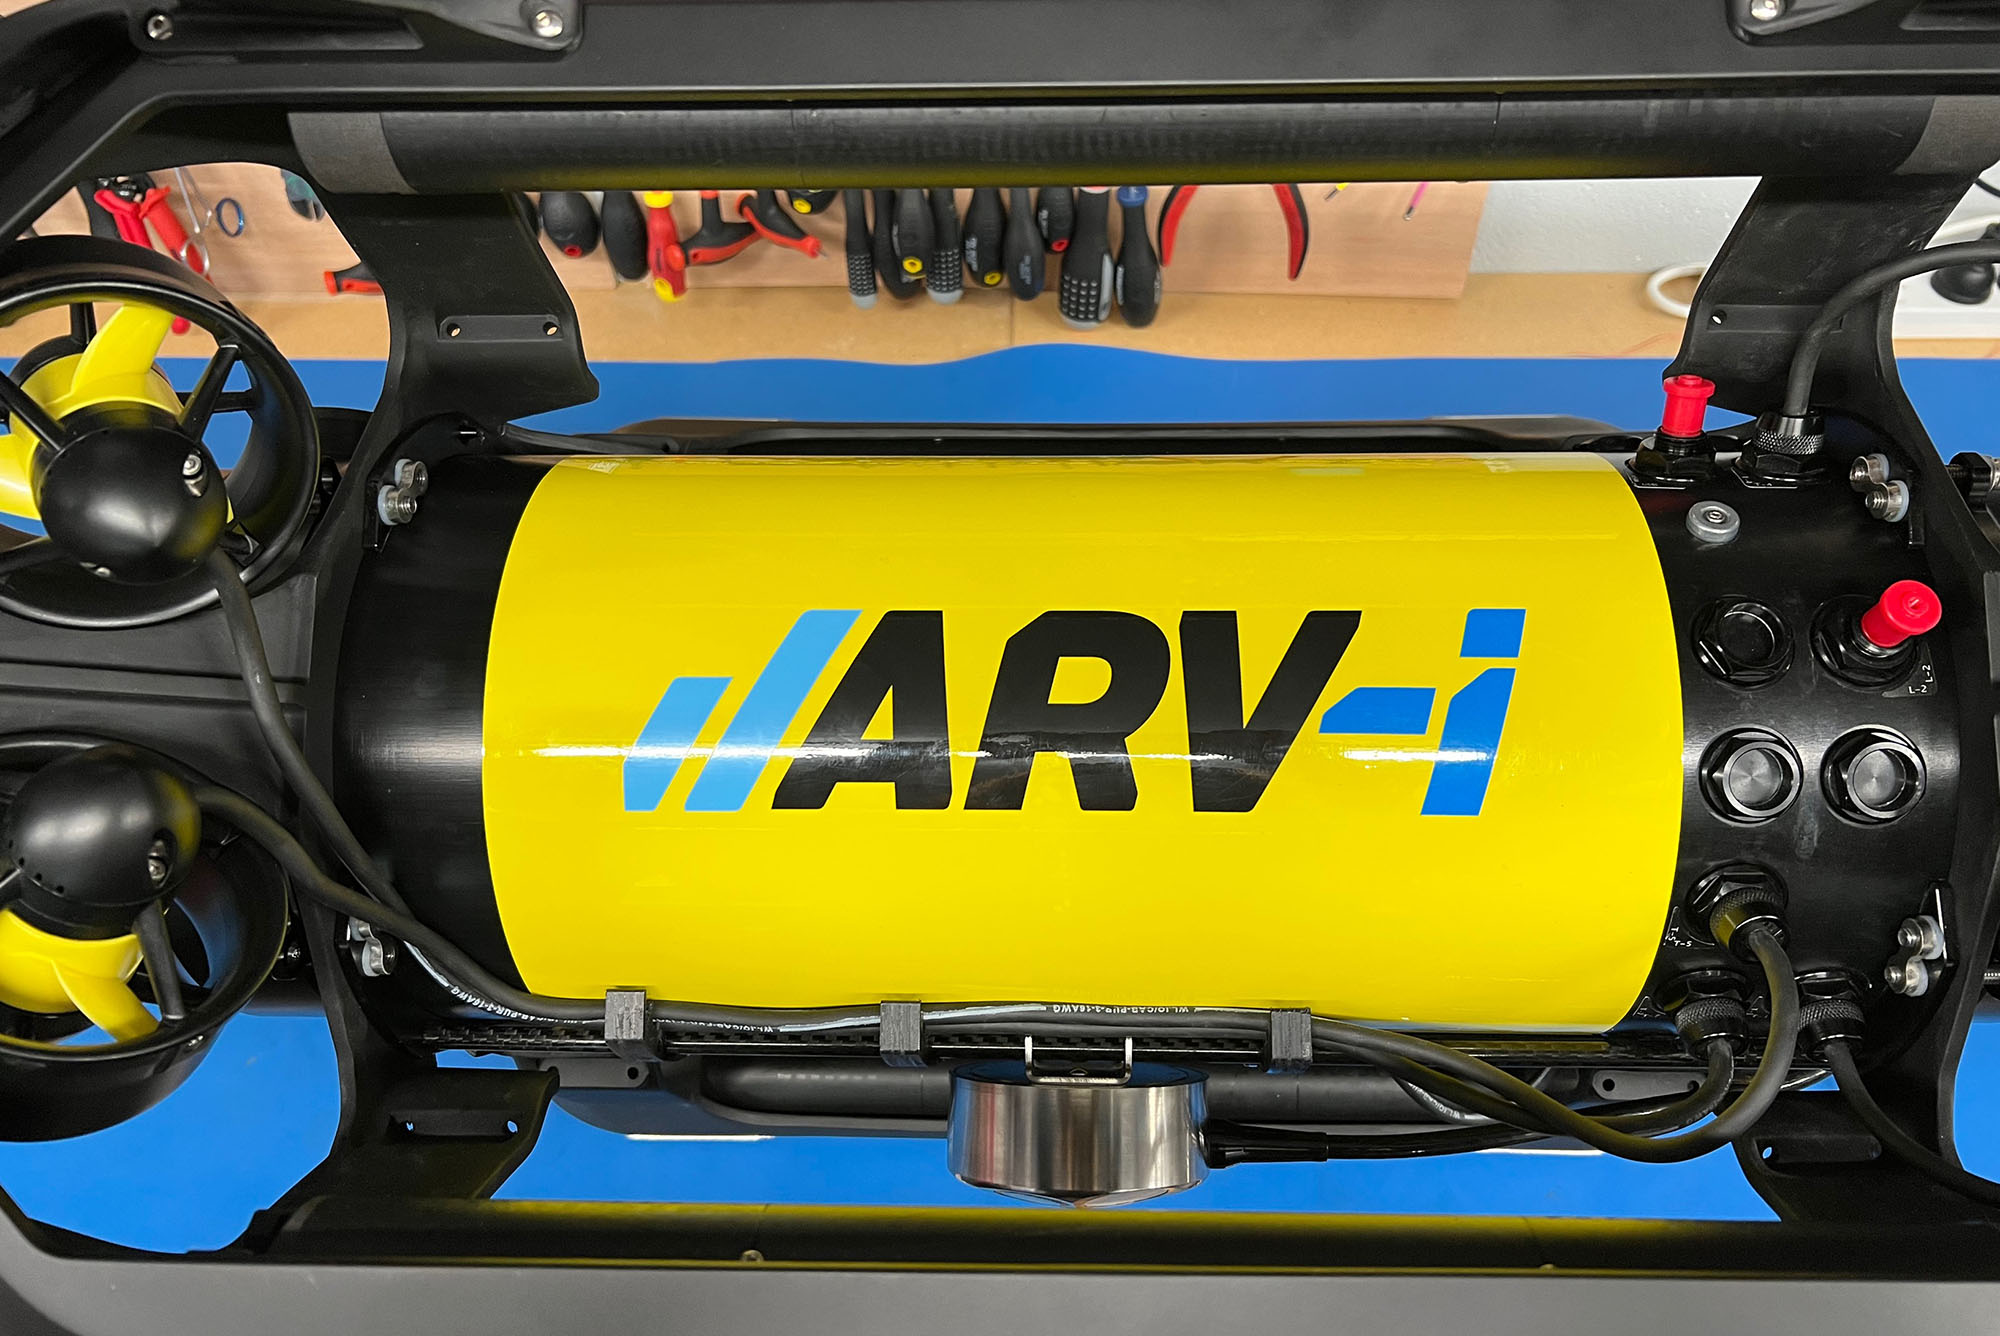 ROV DVL Sensor Installed on the AUV ARV-i